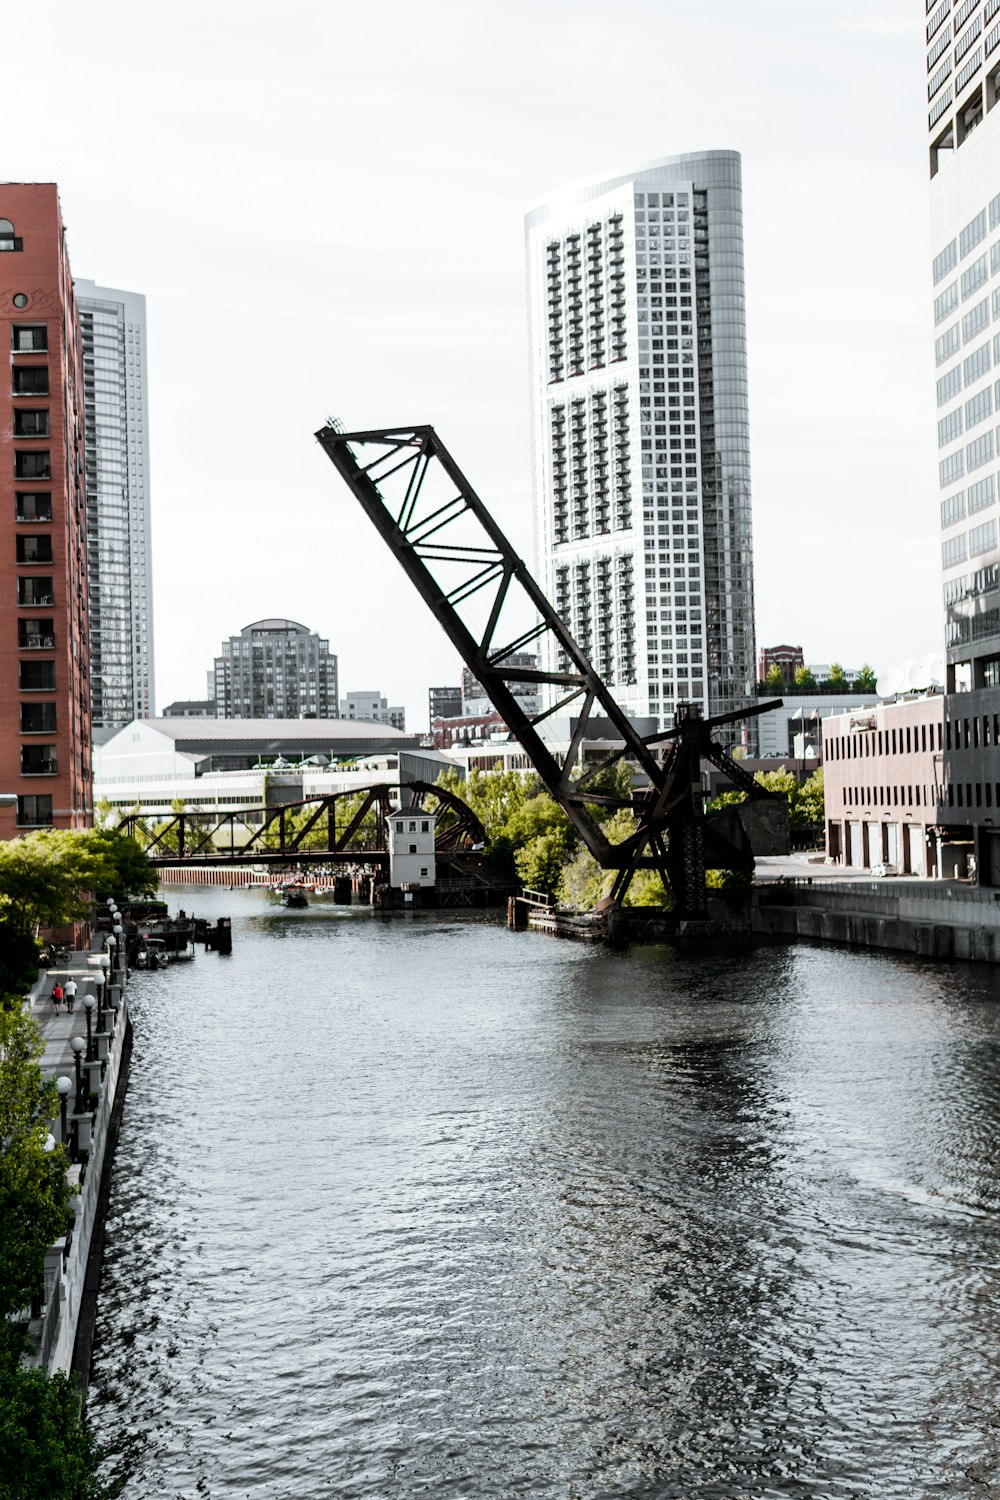 ponte trasversale in metallo nero sul fiume durante il giorno